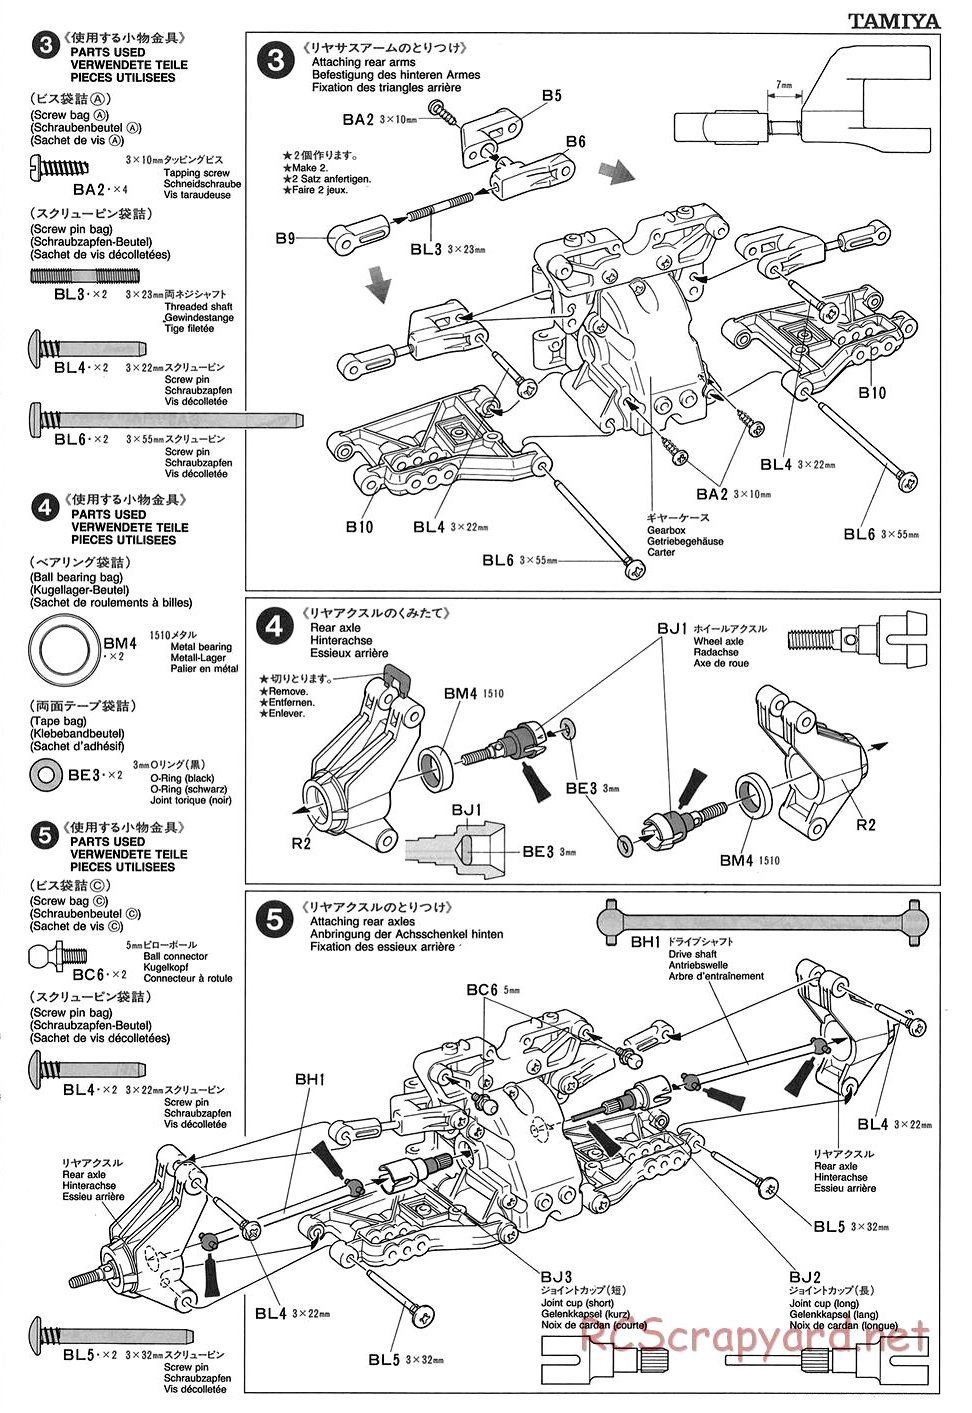 Tamiya - TGX Mk.1 Chassis - Manual - Page 5